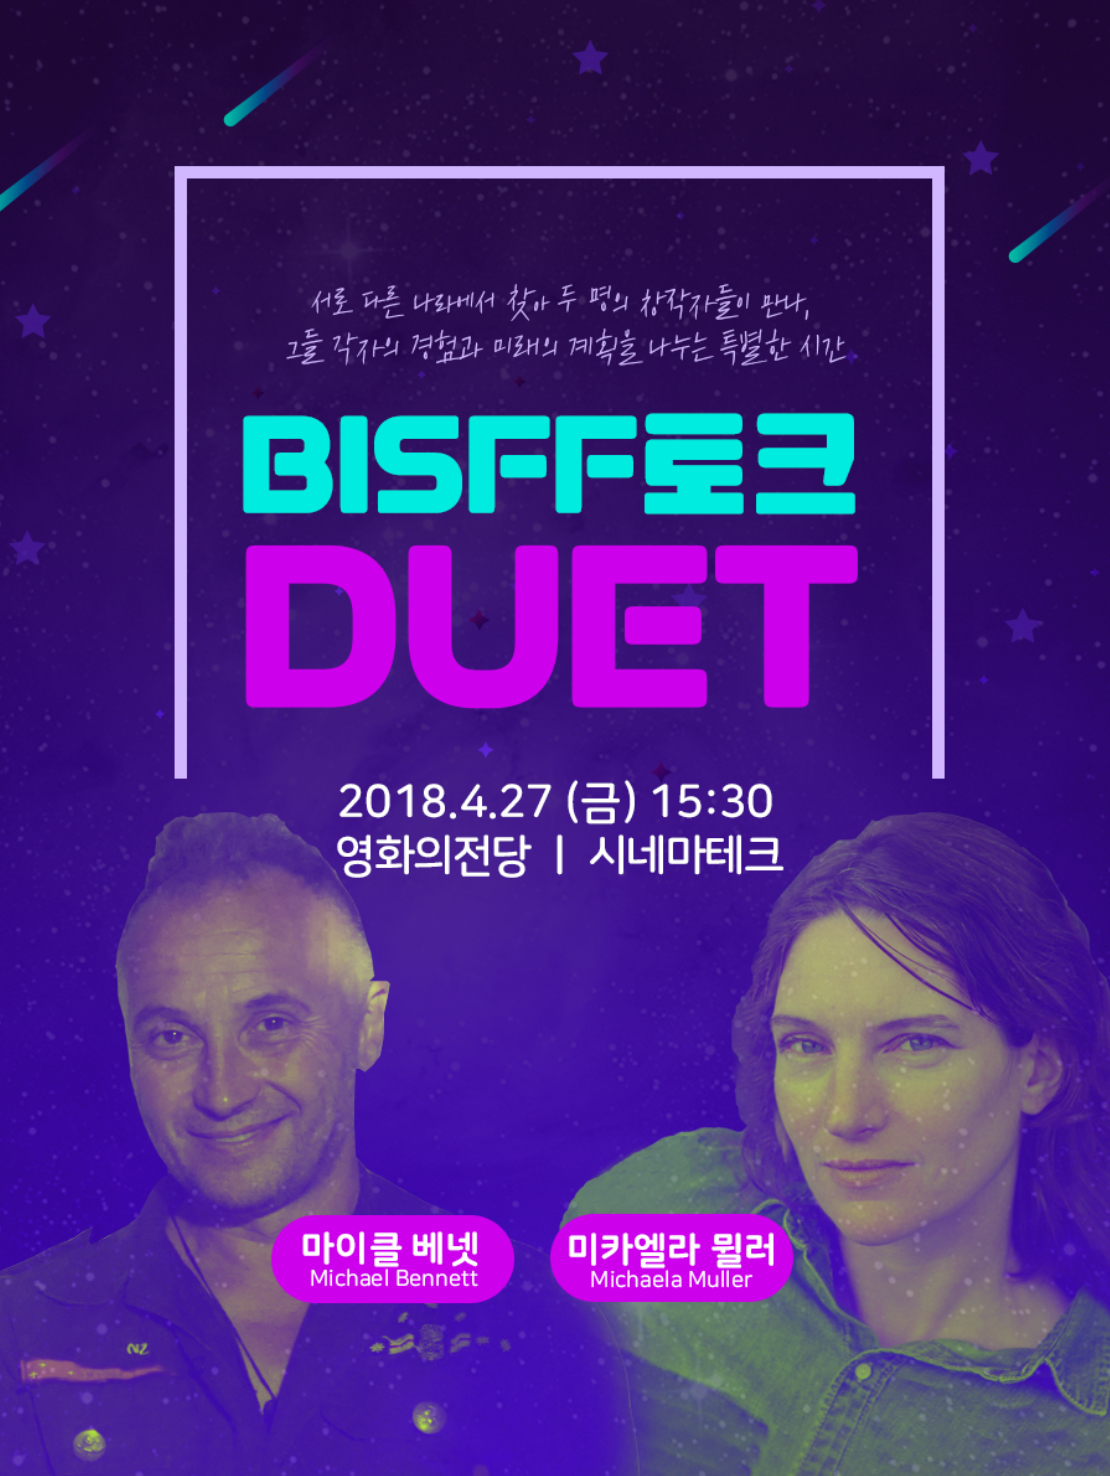 Michael Bennett and Michaela Müller Duet Talk Busan